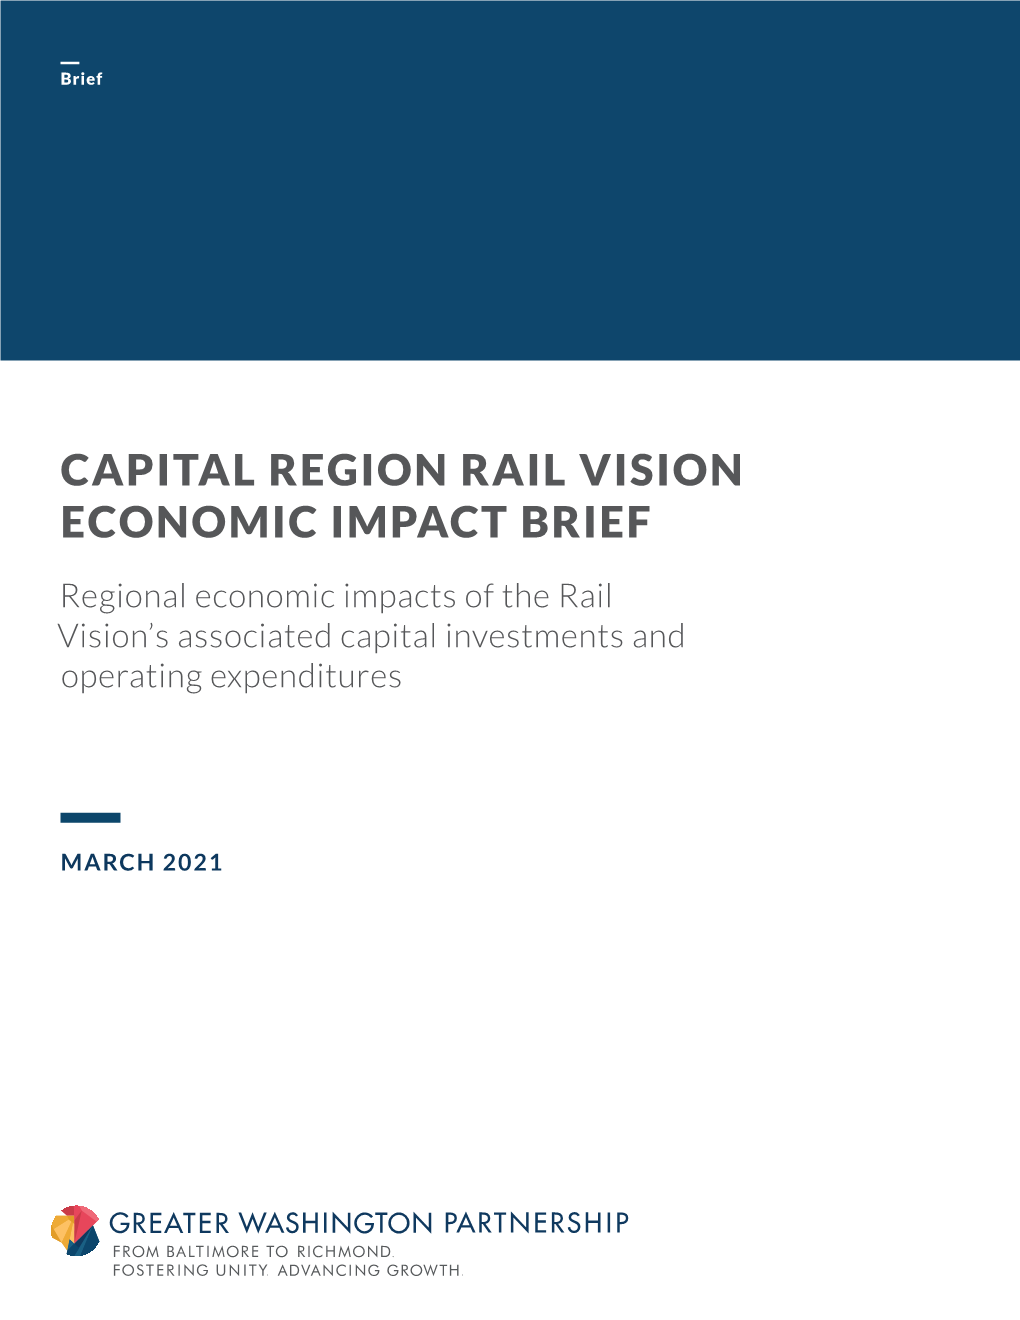 Capital Region Rail Vision Economic Impact Brief